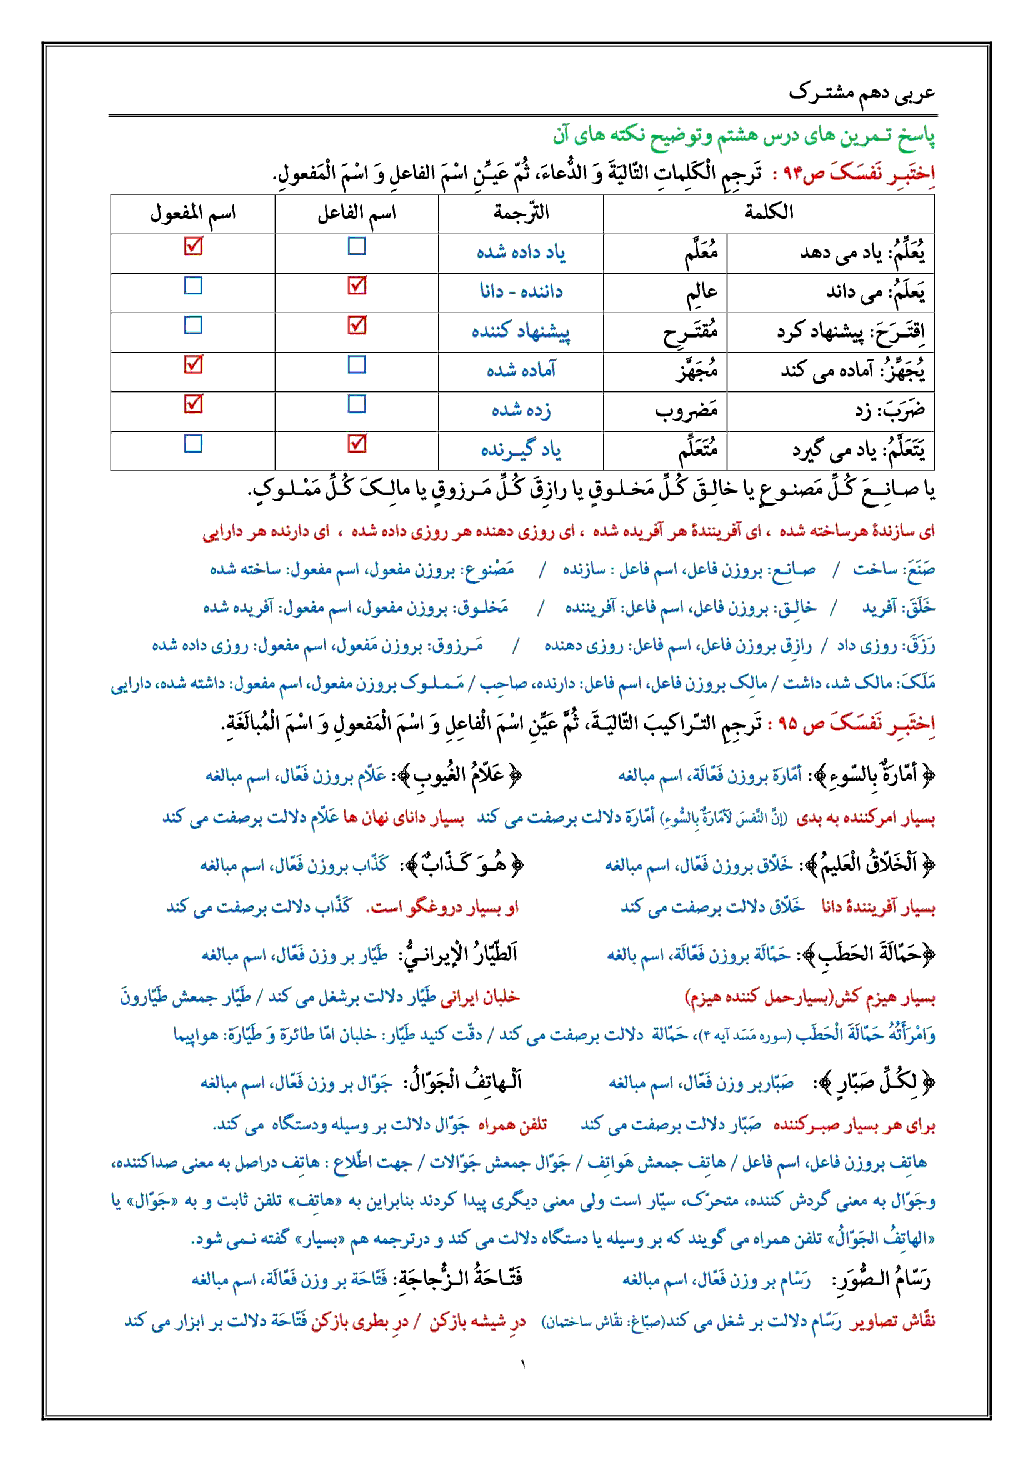 راهنمای حل تمارین (1 تا 6   انوار قرآن) همراه با نکات درس 8 عربی (1) دهم ریاضی و تجربی